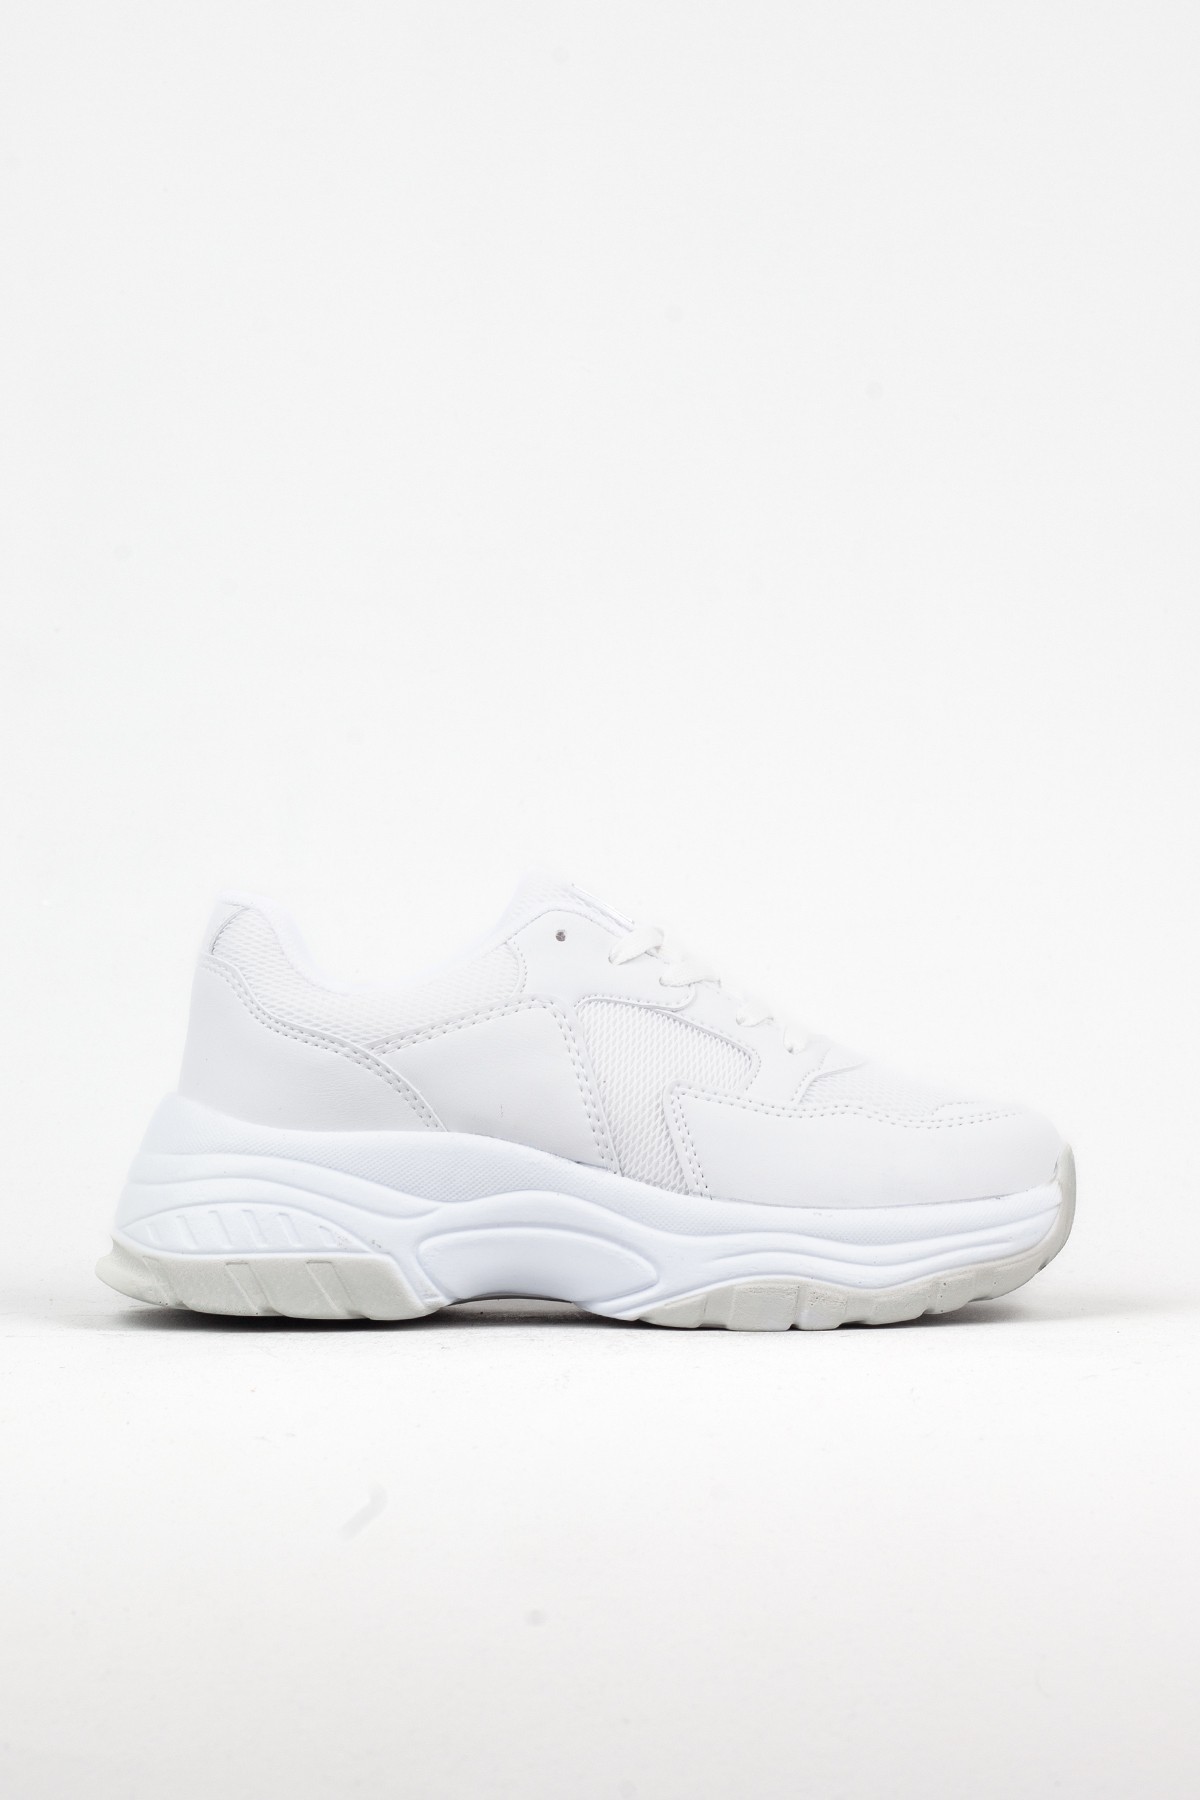 Kadın Beyaz Renk Kalın Taban Sneaker, Spor Ayakkabı